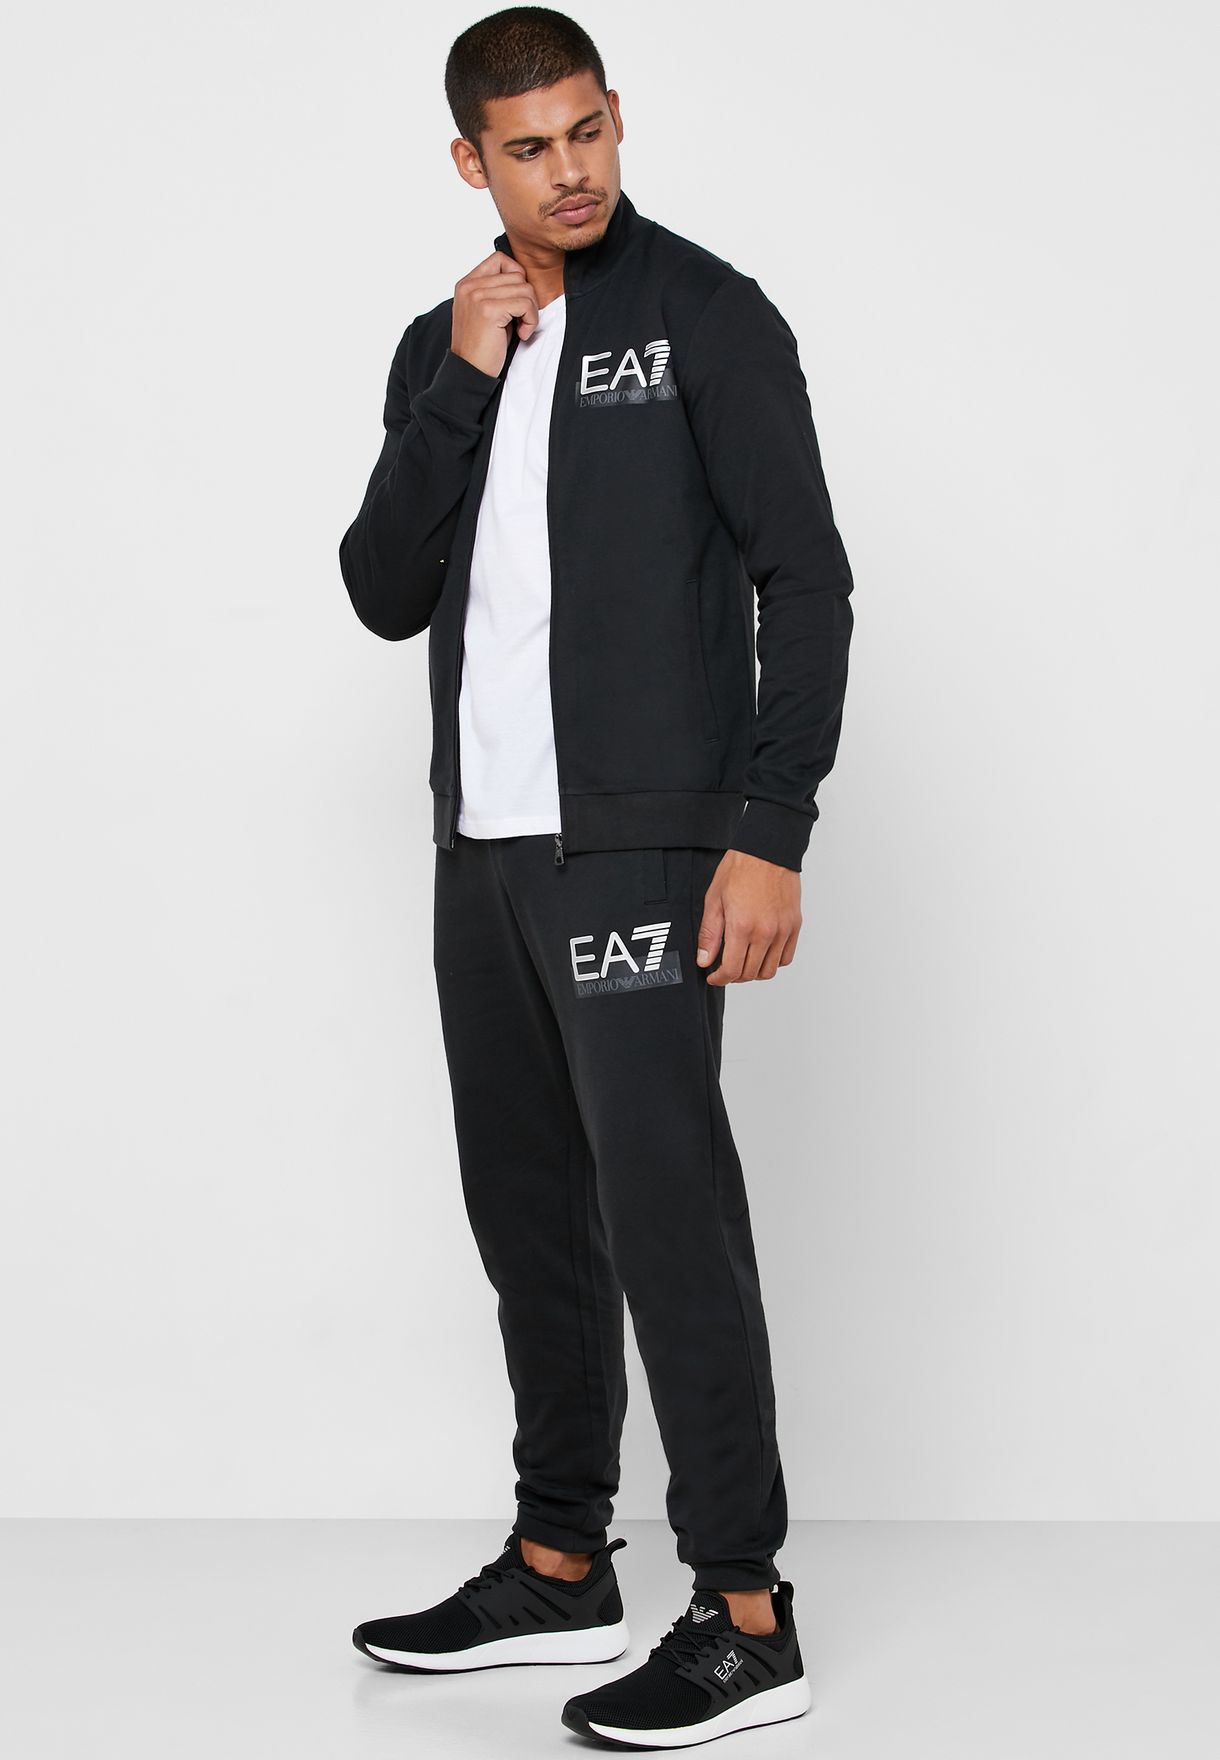 ea7 sportswear